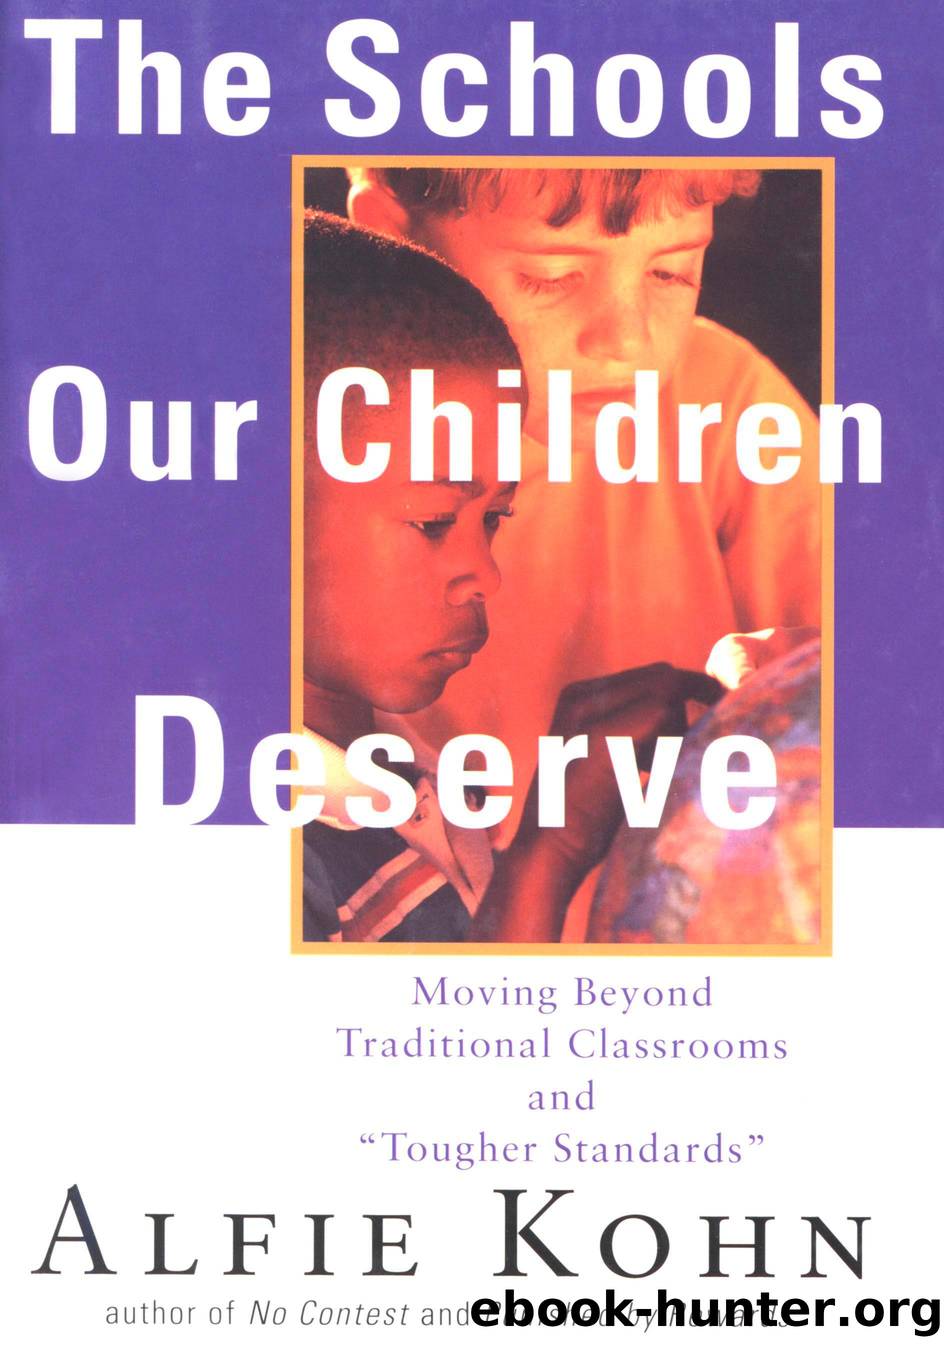 The Schools Our Children Deserve by Alfie Kohn